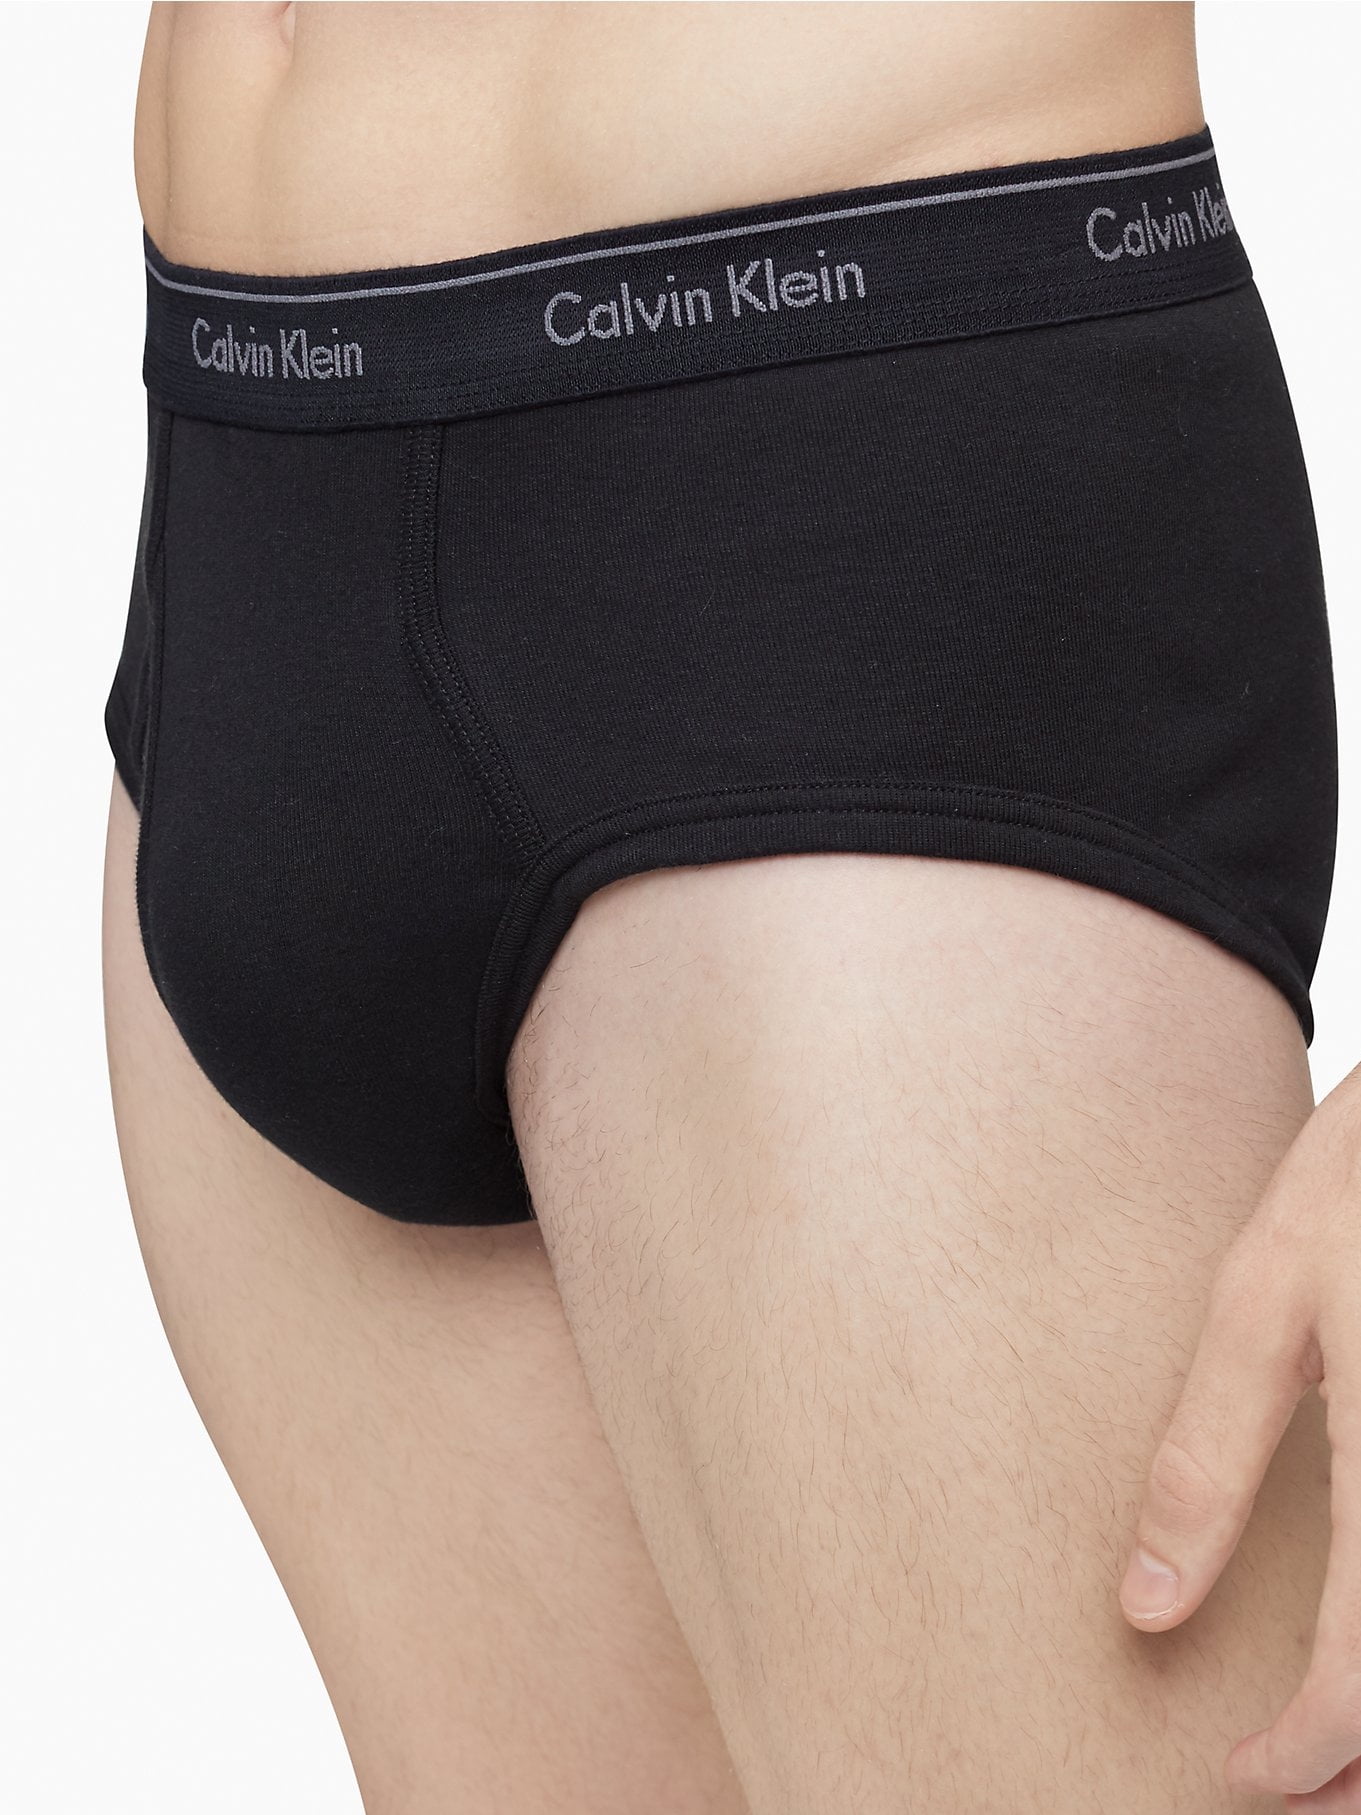 Calvin Klein Men's Cotton Classic Fit Brief -4 Pack, Black, Large -  